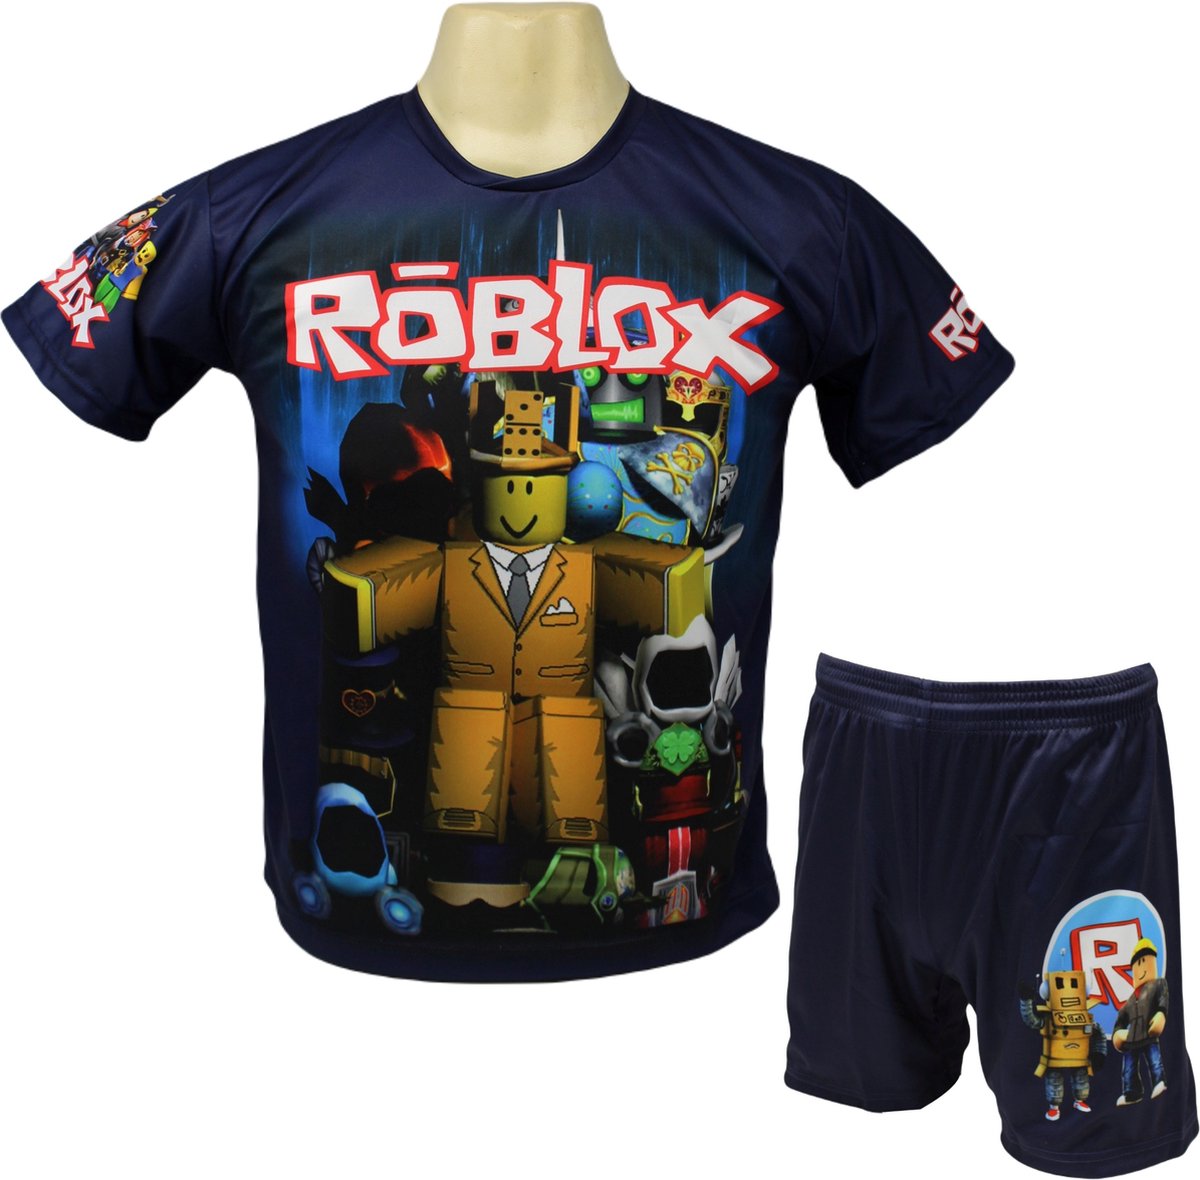 Roblox Shirt en Broekje - Roblox Kleding Tenue - Kinder tot Volwassen maten - Maat L